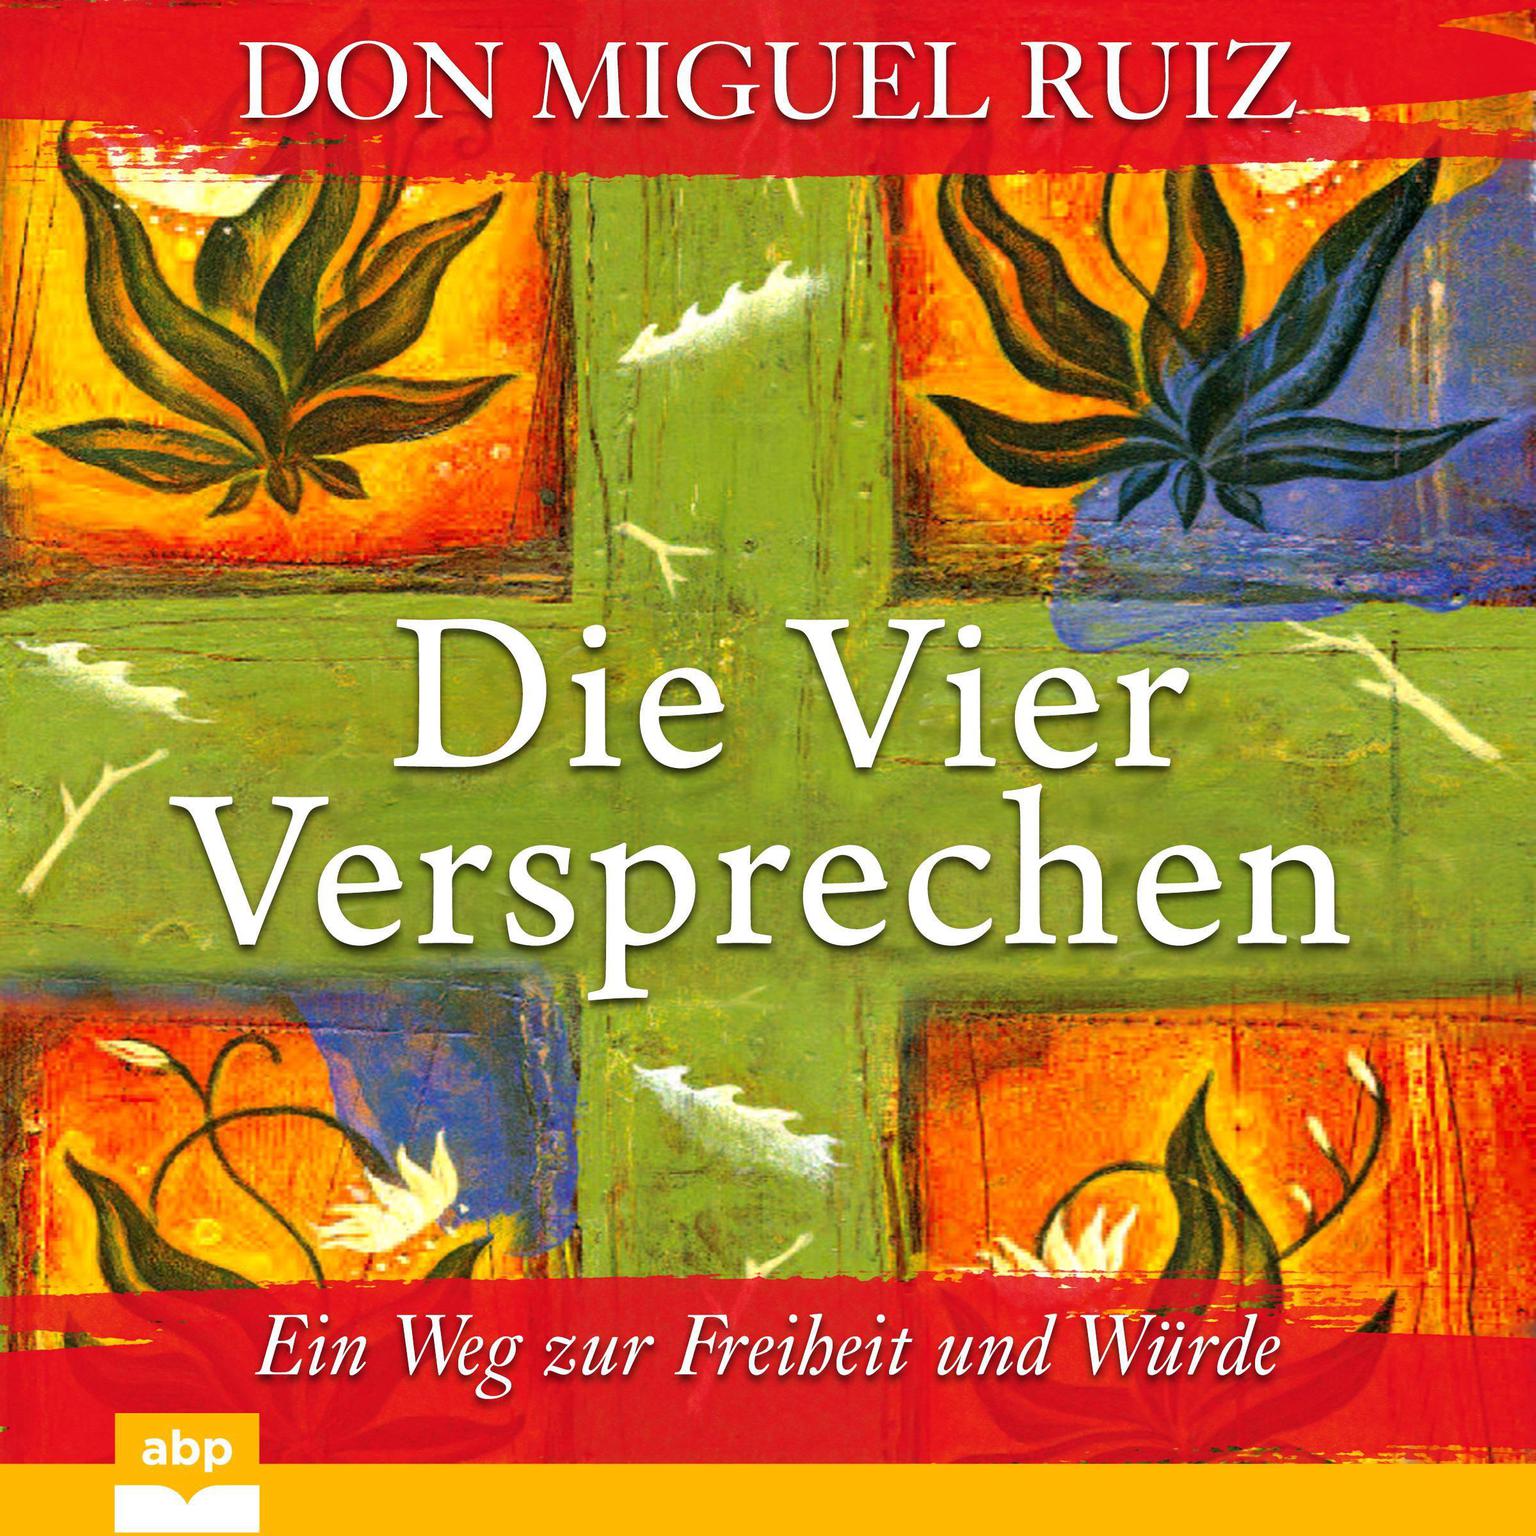 Die vier Versprechen: Ein Weg zur Freiheit und Würde Audiobook, by Don Miguel Ruiz